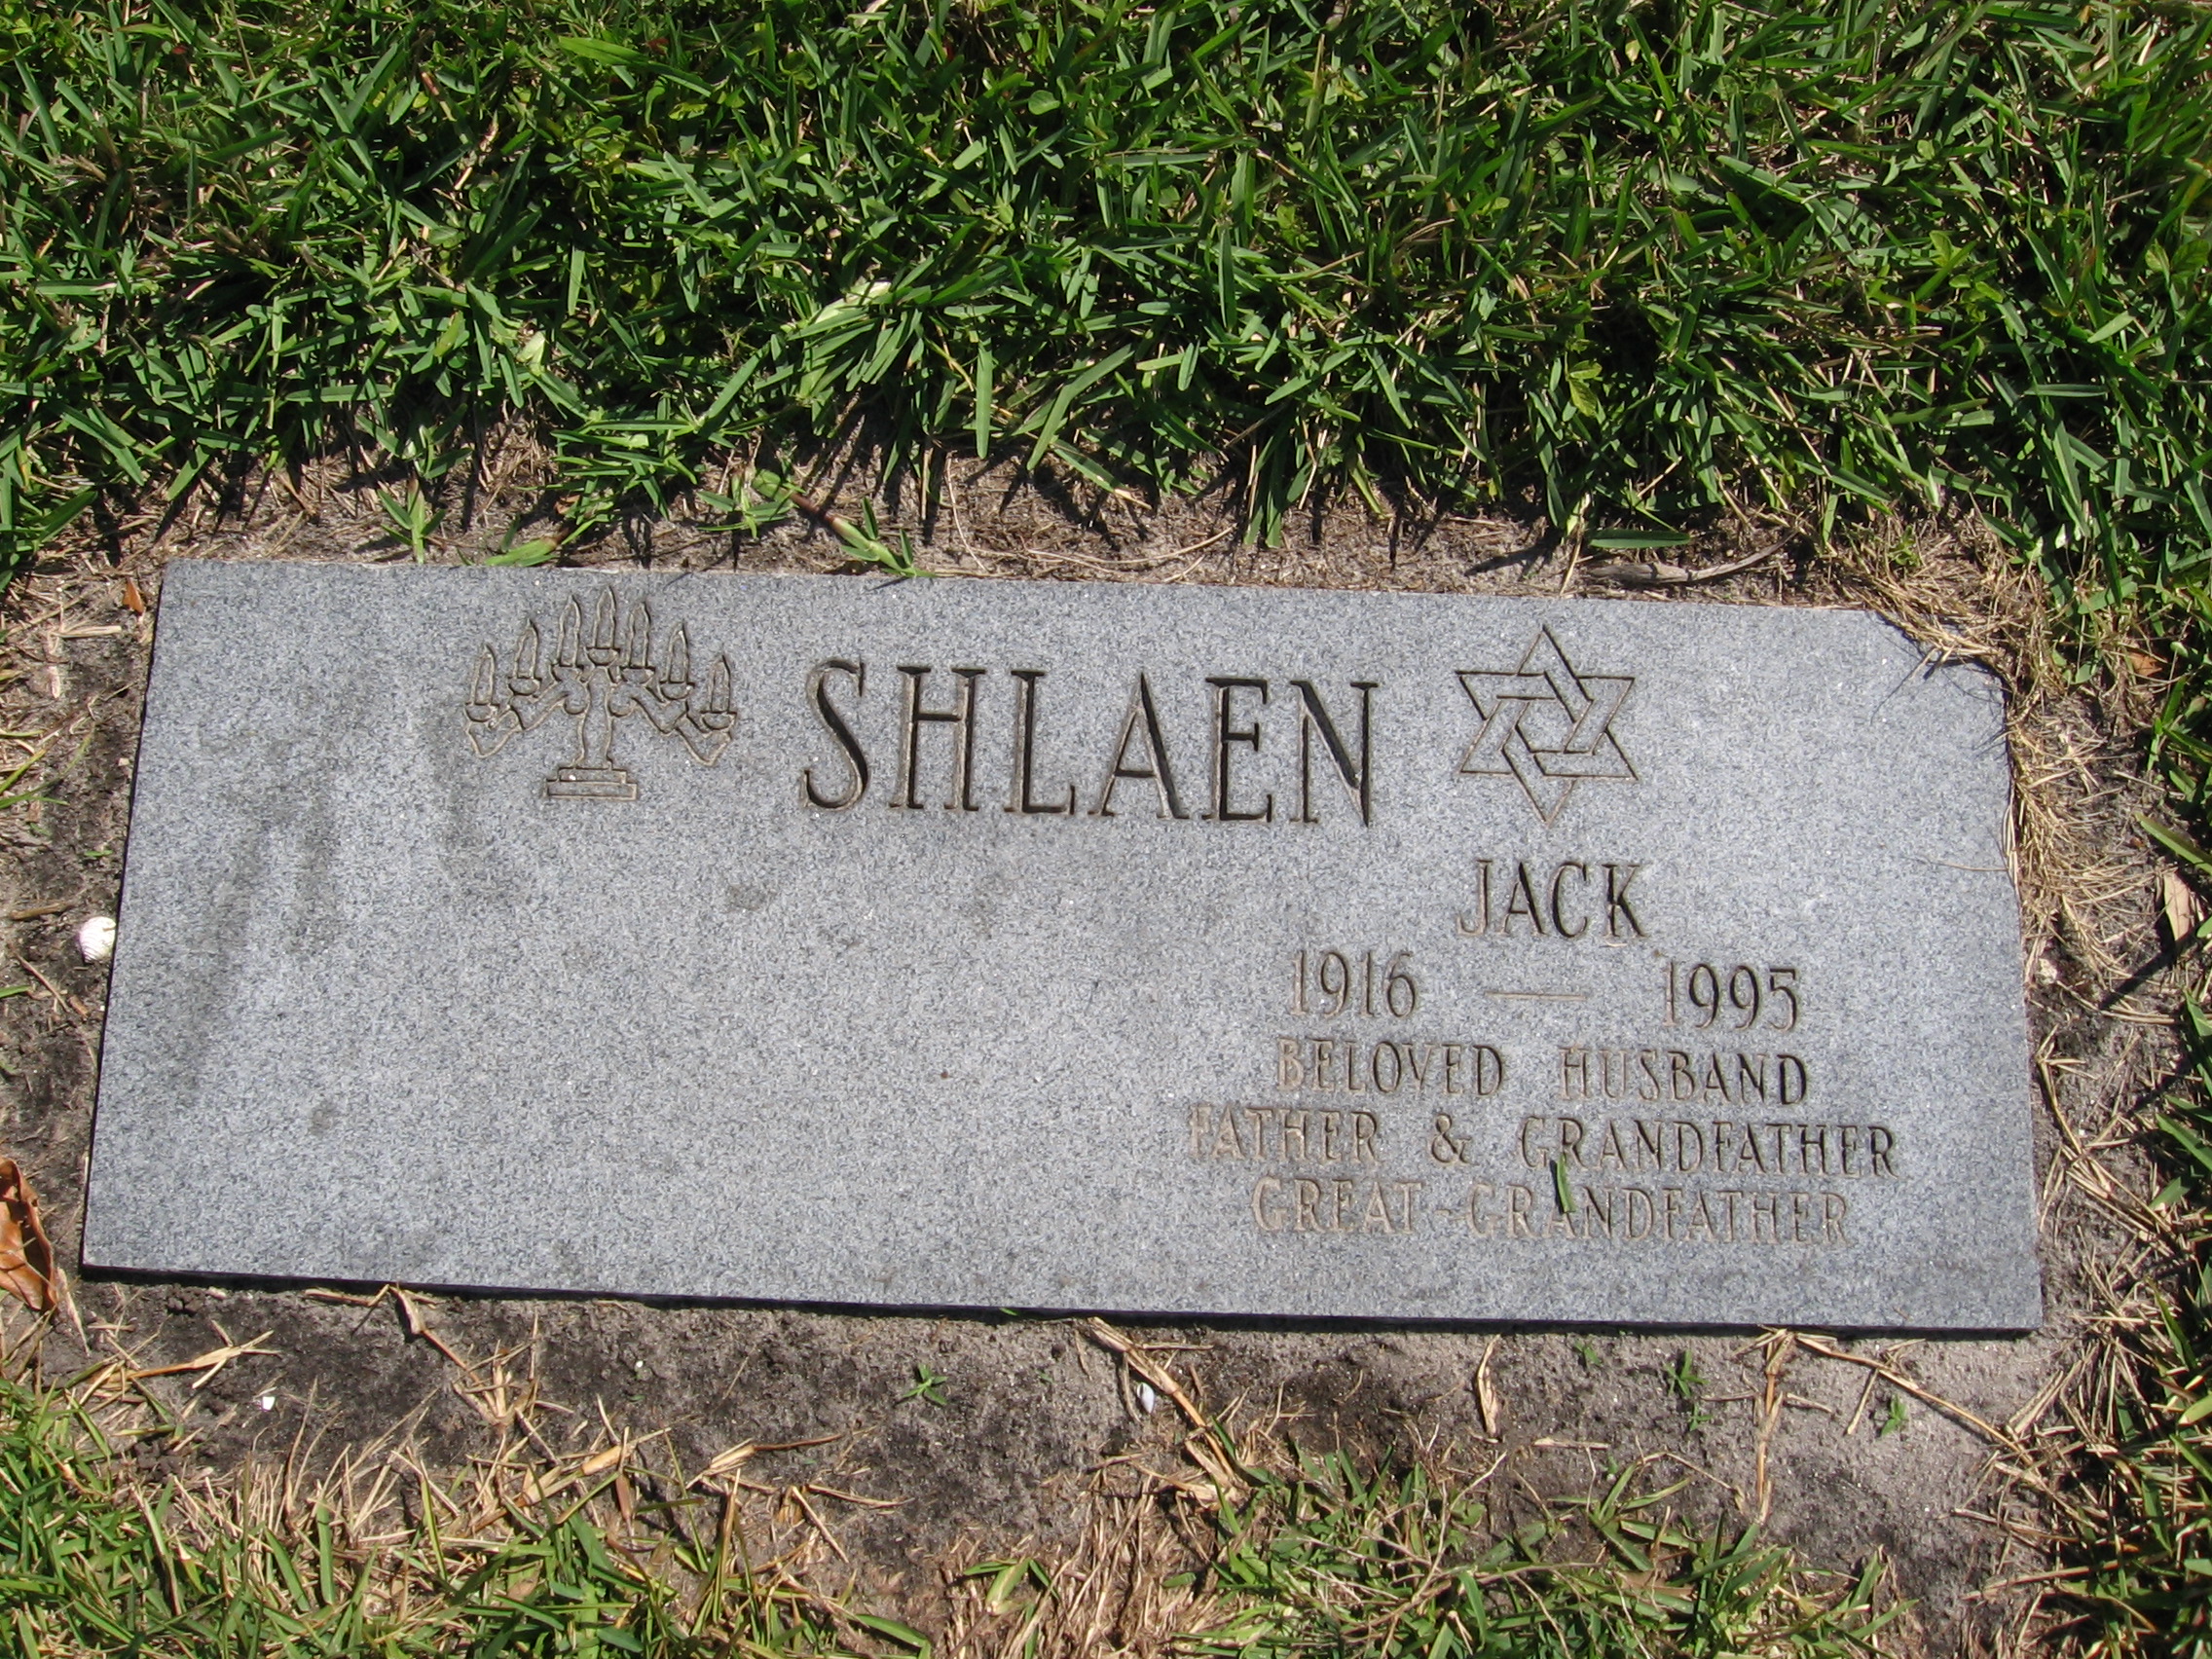 Jack Shlaen